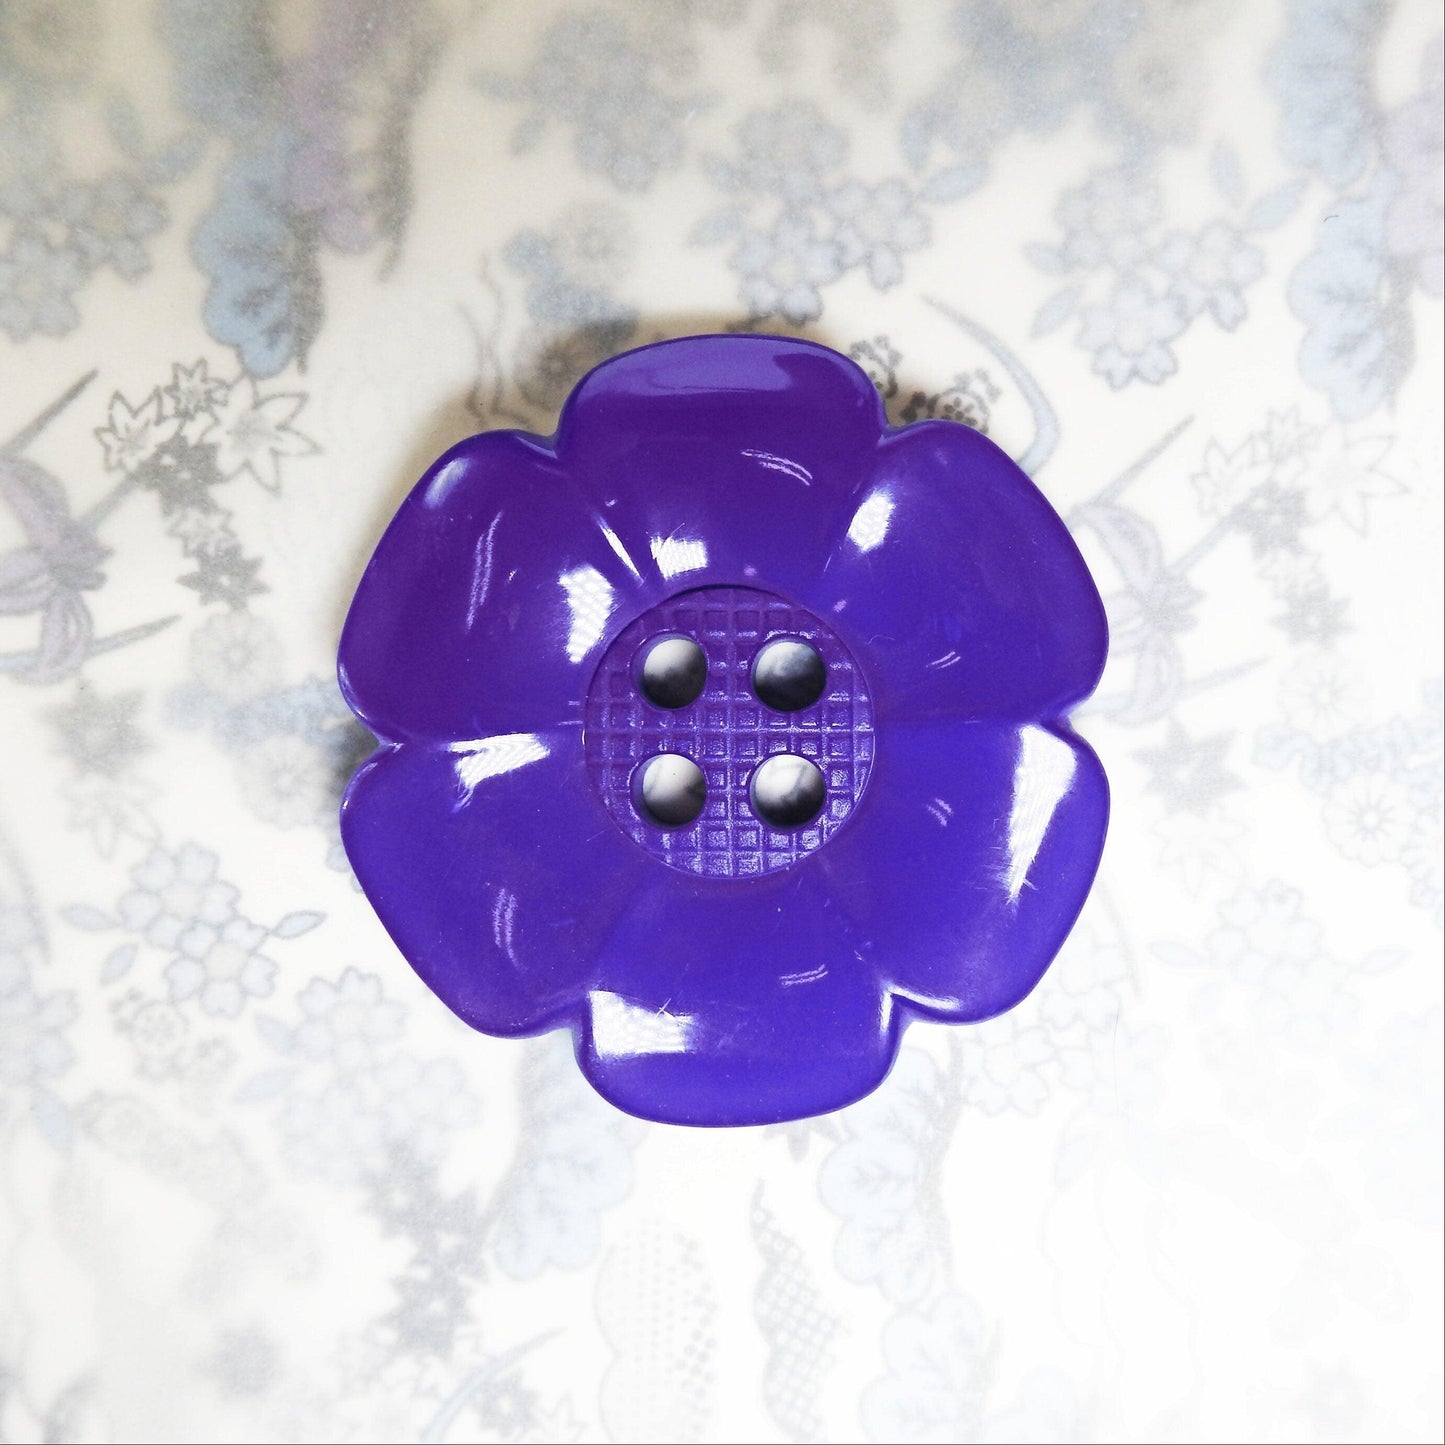 Huge purple floral button